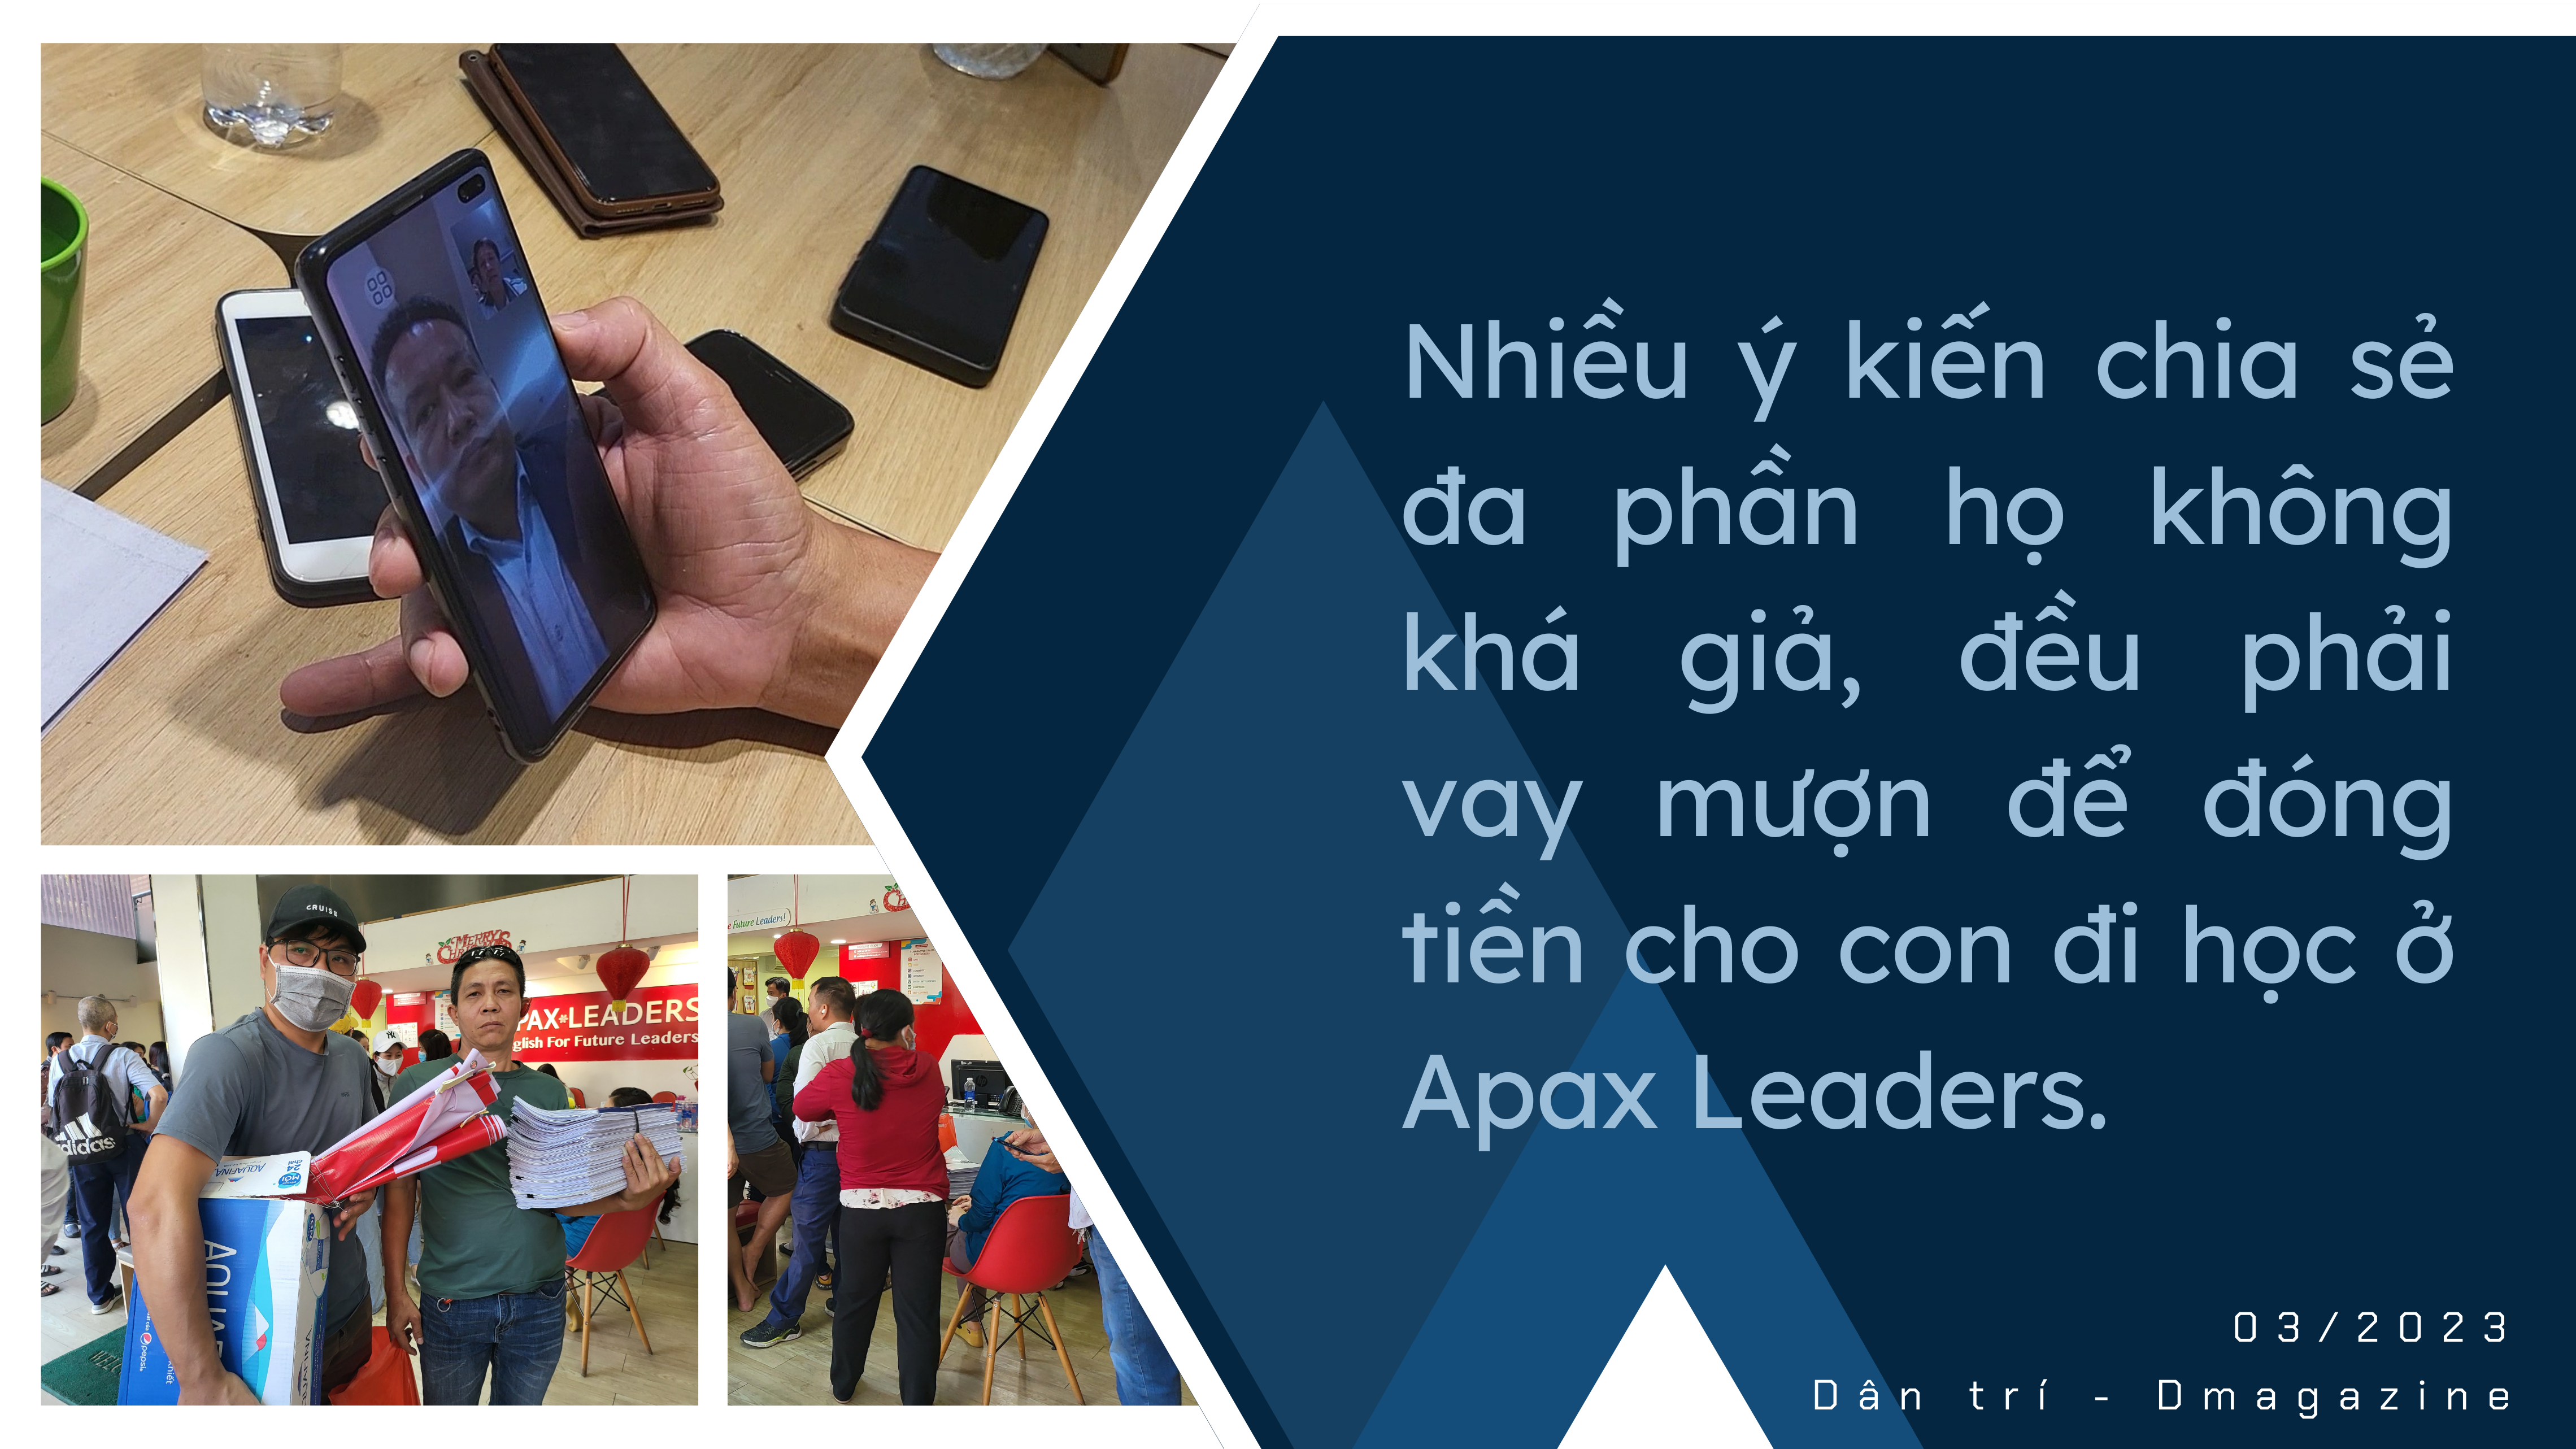 Shark Thủy và Apax Leaders: Càng đối thoại phụ huynh càng nổi giận - 10